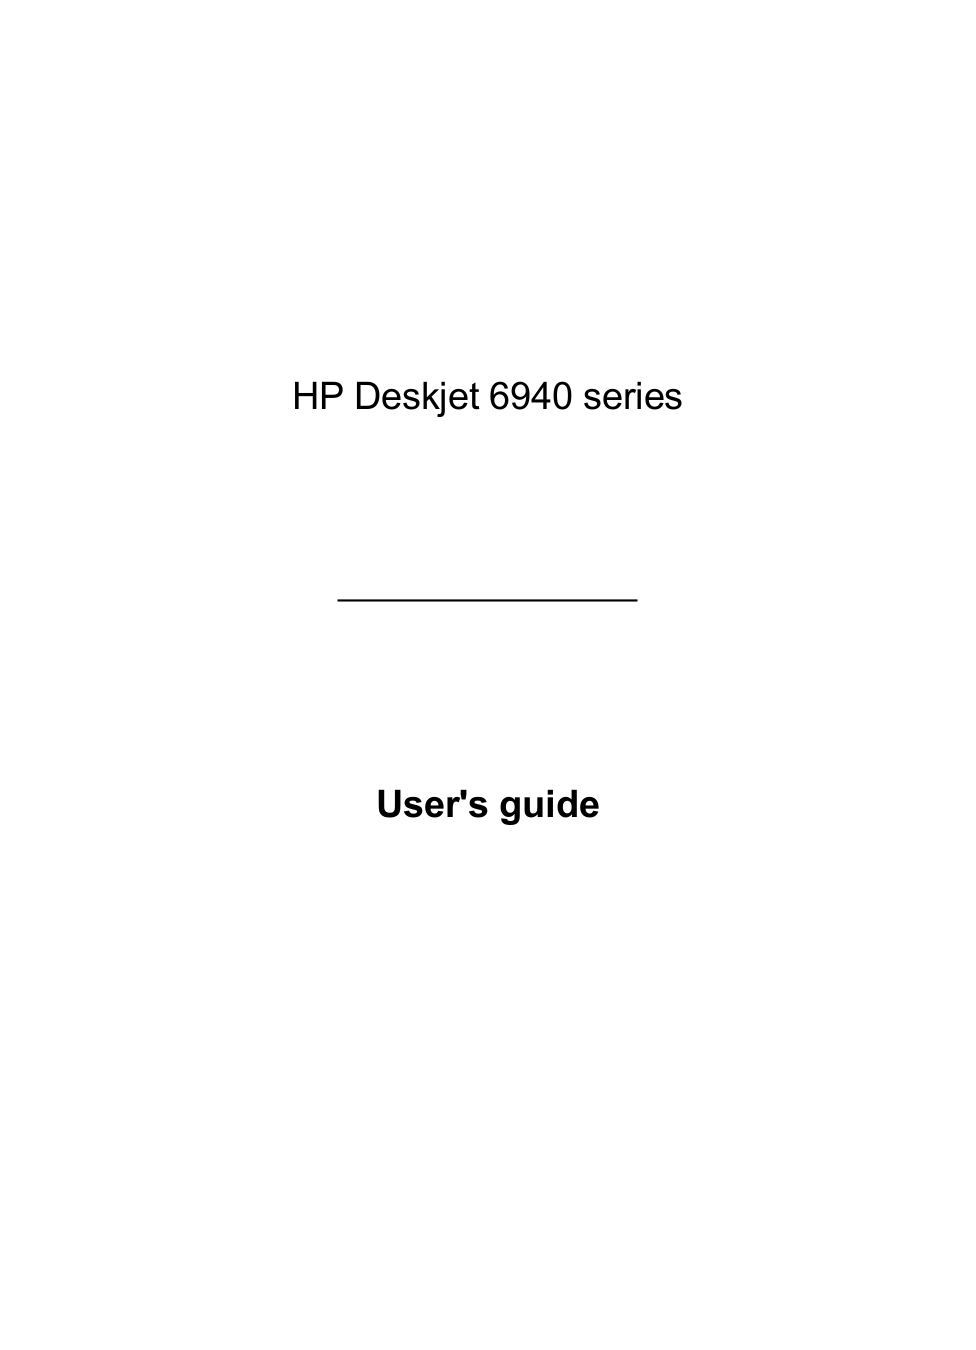 Hp Model 5940 Printer User Manual